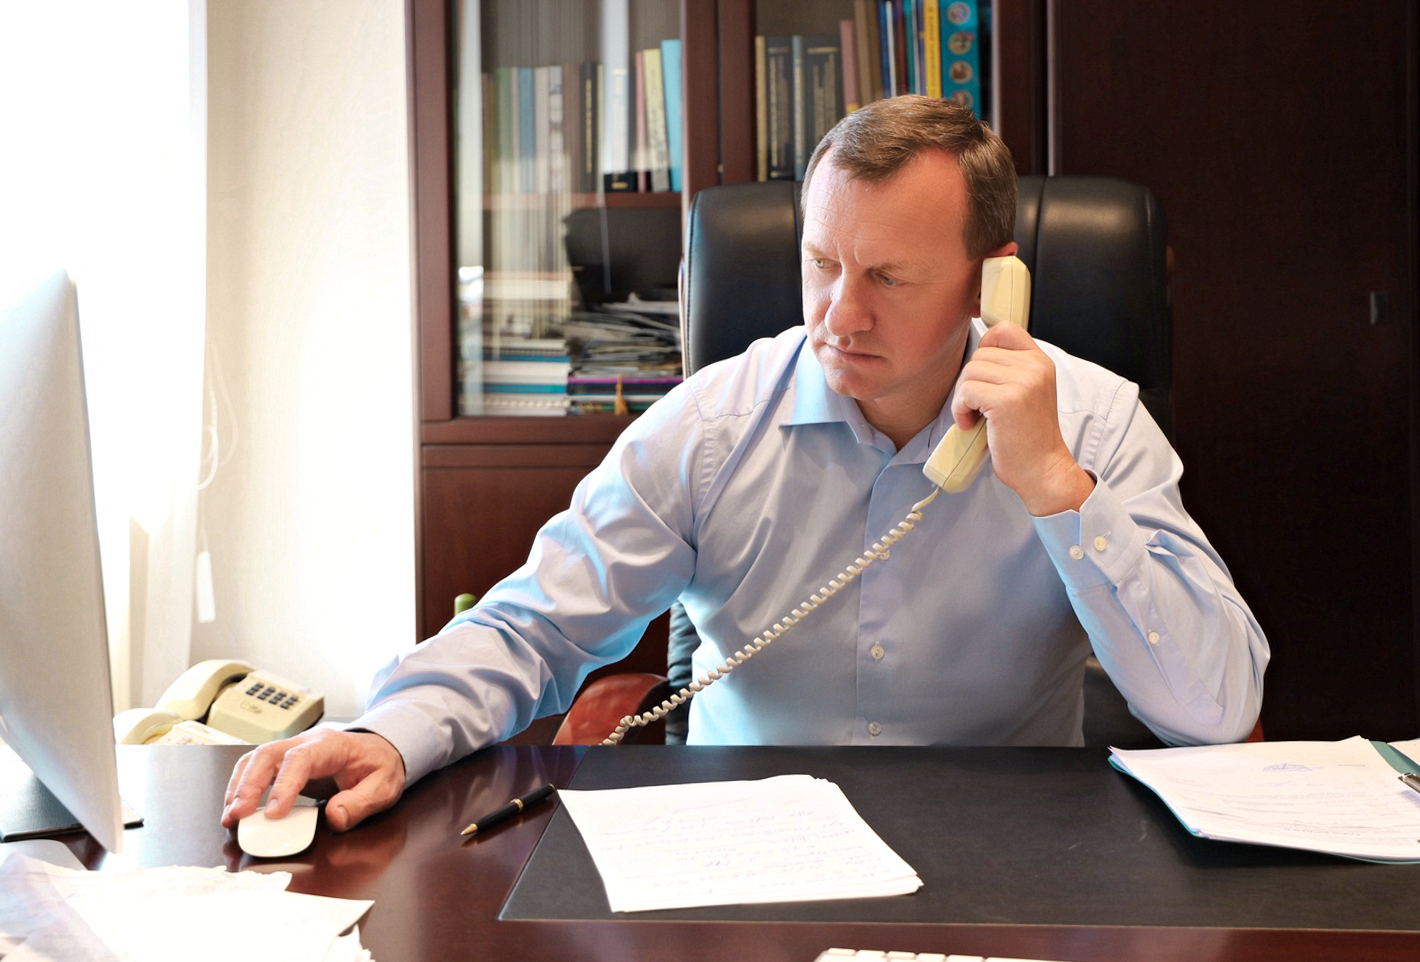 Міський голова Ужгорода Богдан Андріїв сьогодні спілкувався з містянами під час прямої телефонної лінії